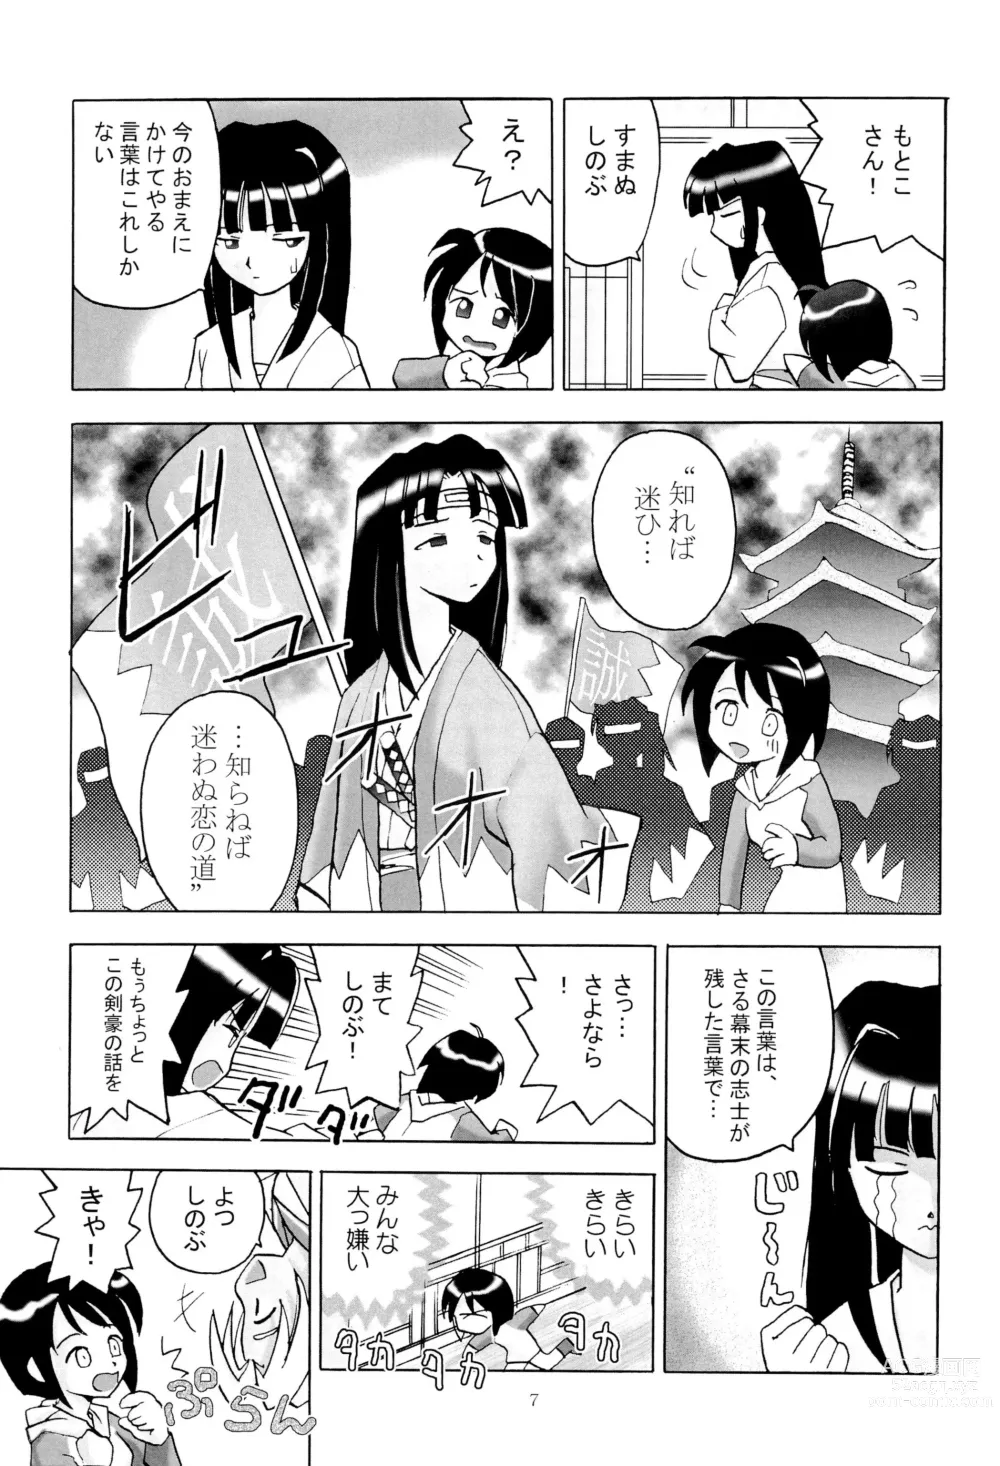 Page 9 of doujinshi Shino Buna